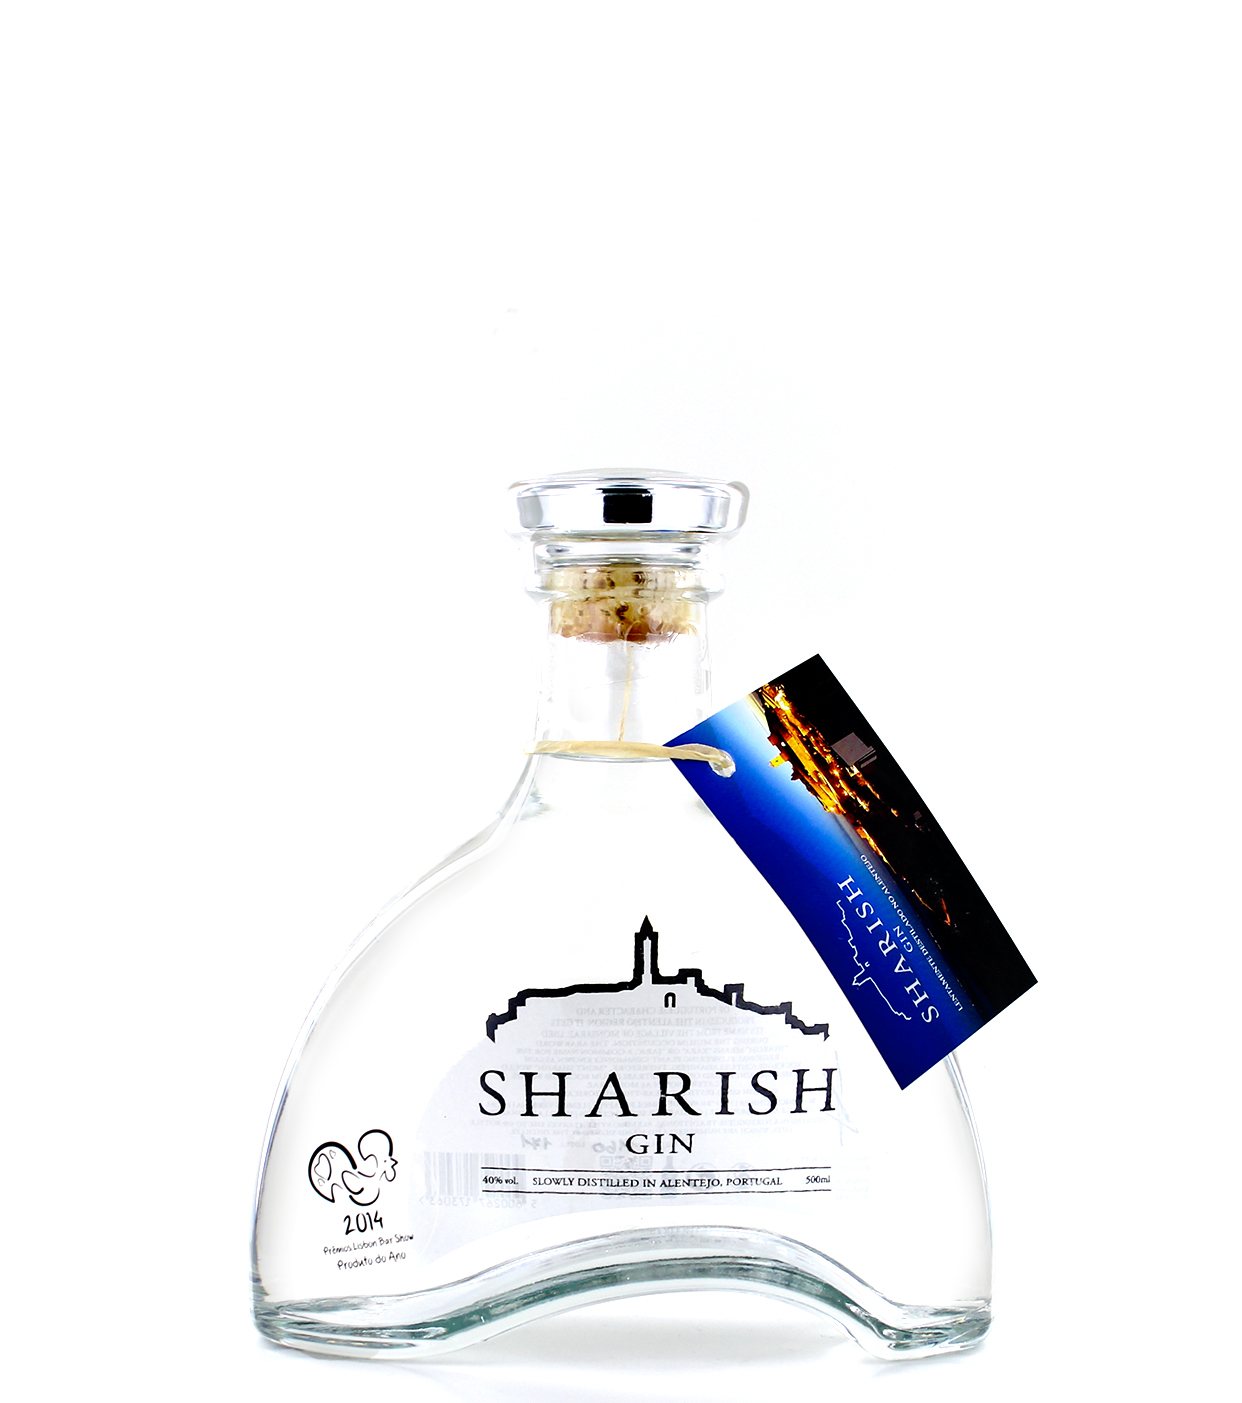 Sharish Gin - 0.5L | New Western Dry Gin | McGin.ch - Taste it, love it!